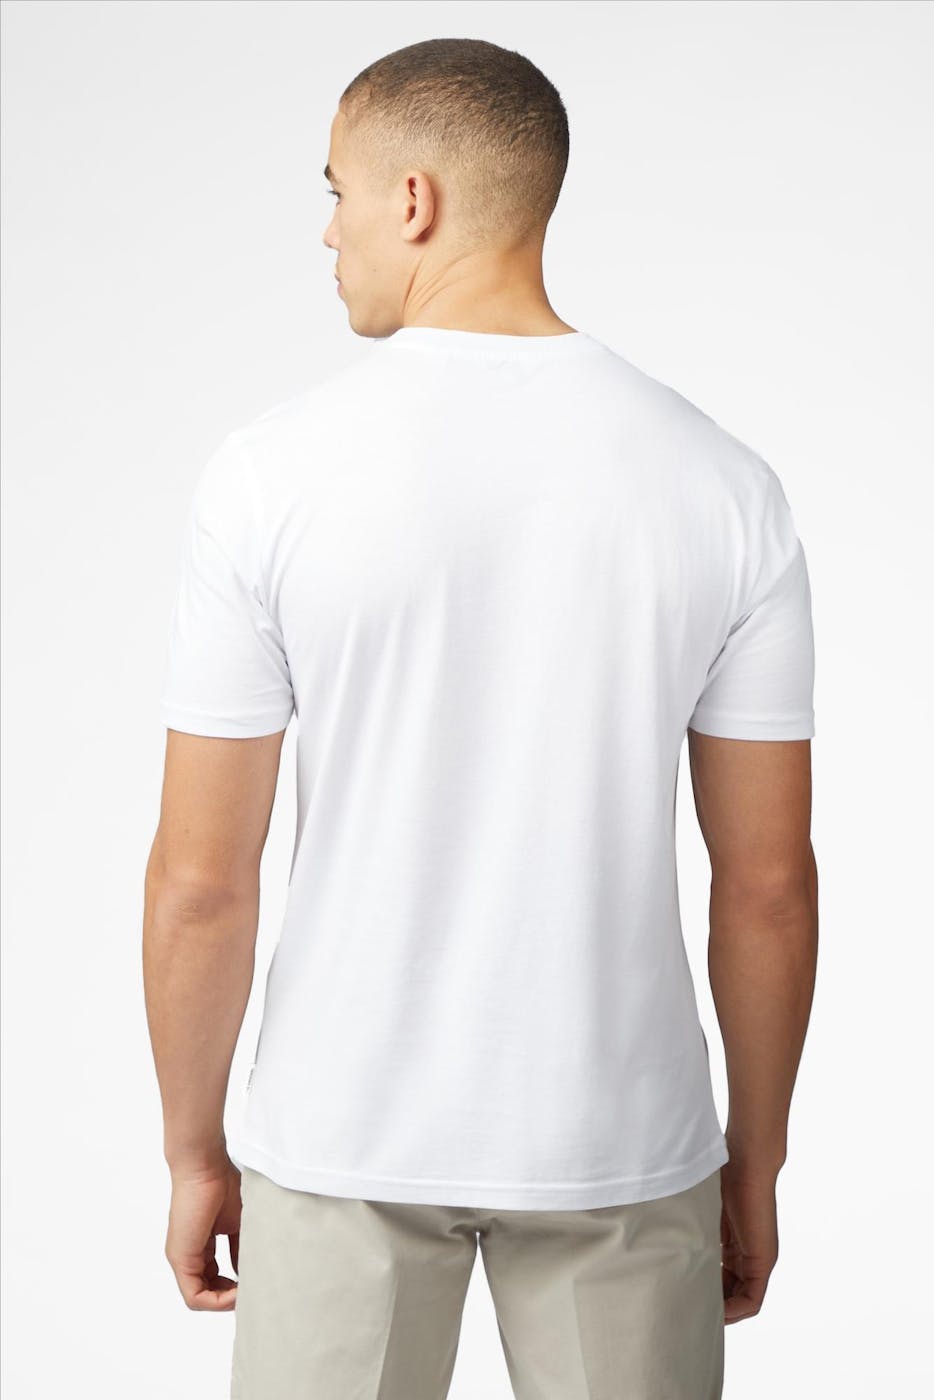 Ben Sherman - Witte Radio Stack T-shirt